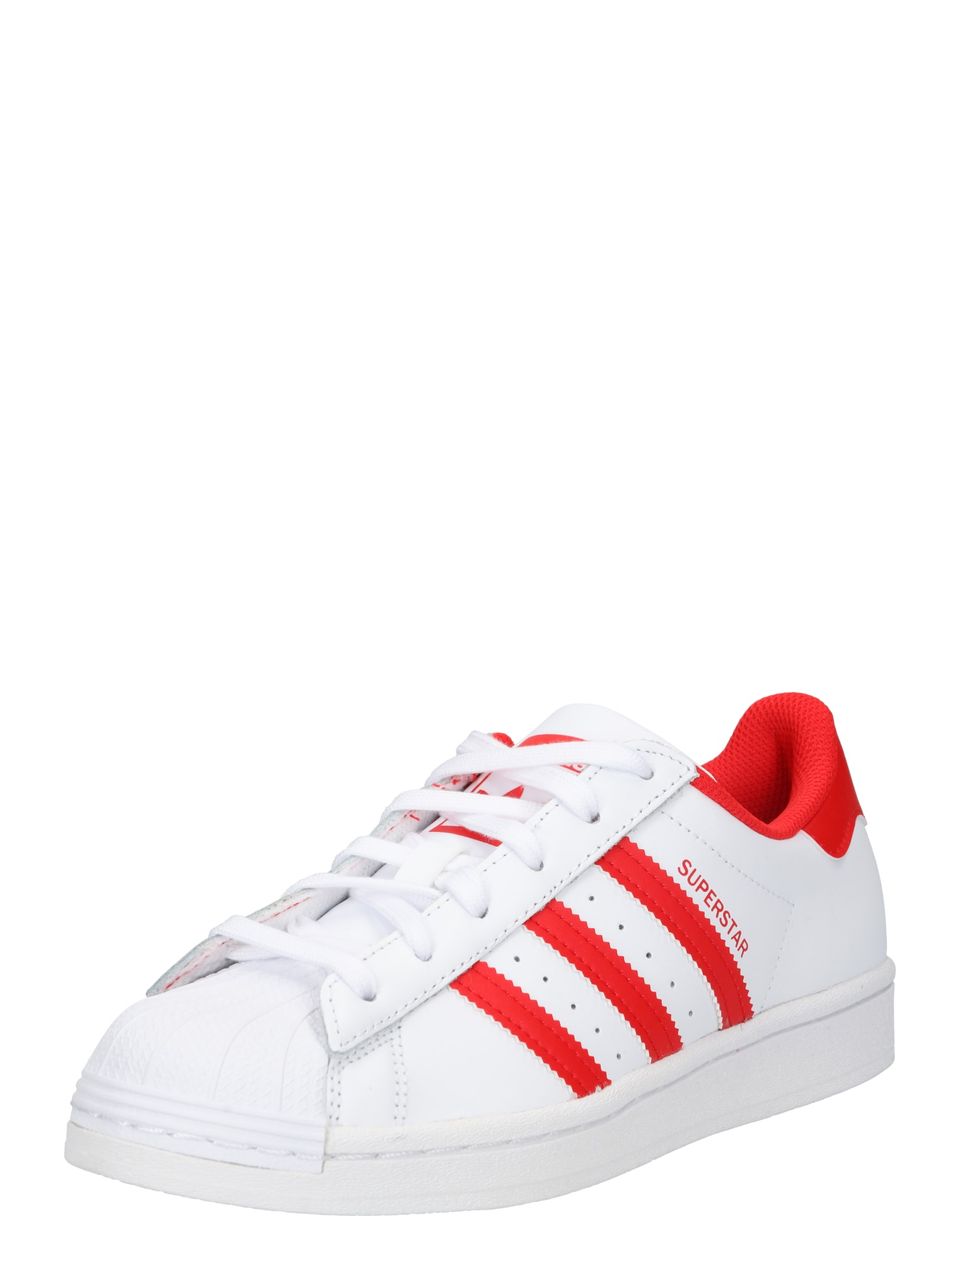 Belang opwinding haalbaar Adidas ORIGINALS Sneakers laag 'Superstar' rood / wit GZ3741 - Vergelijk  prijzen